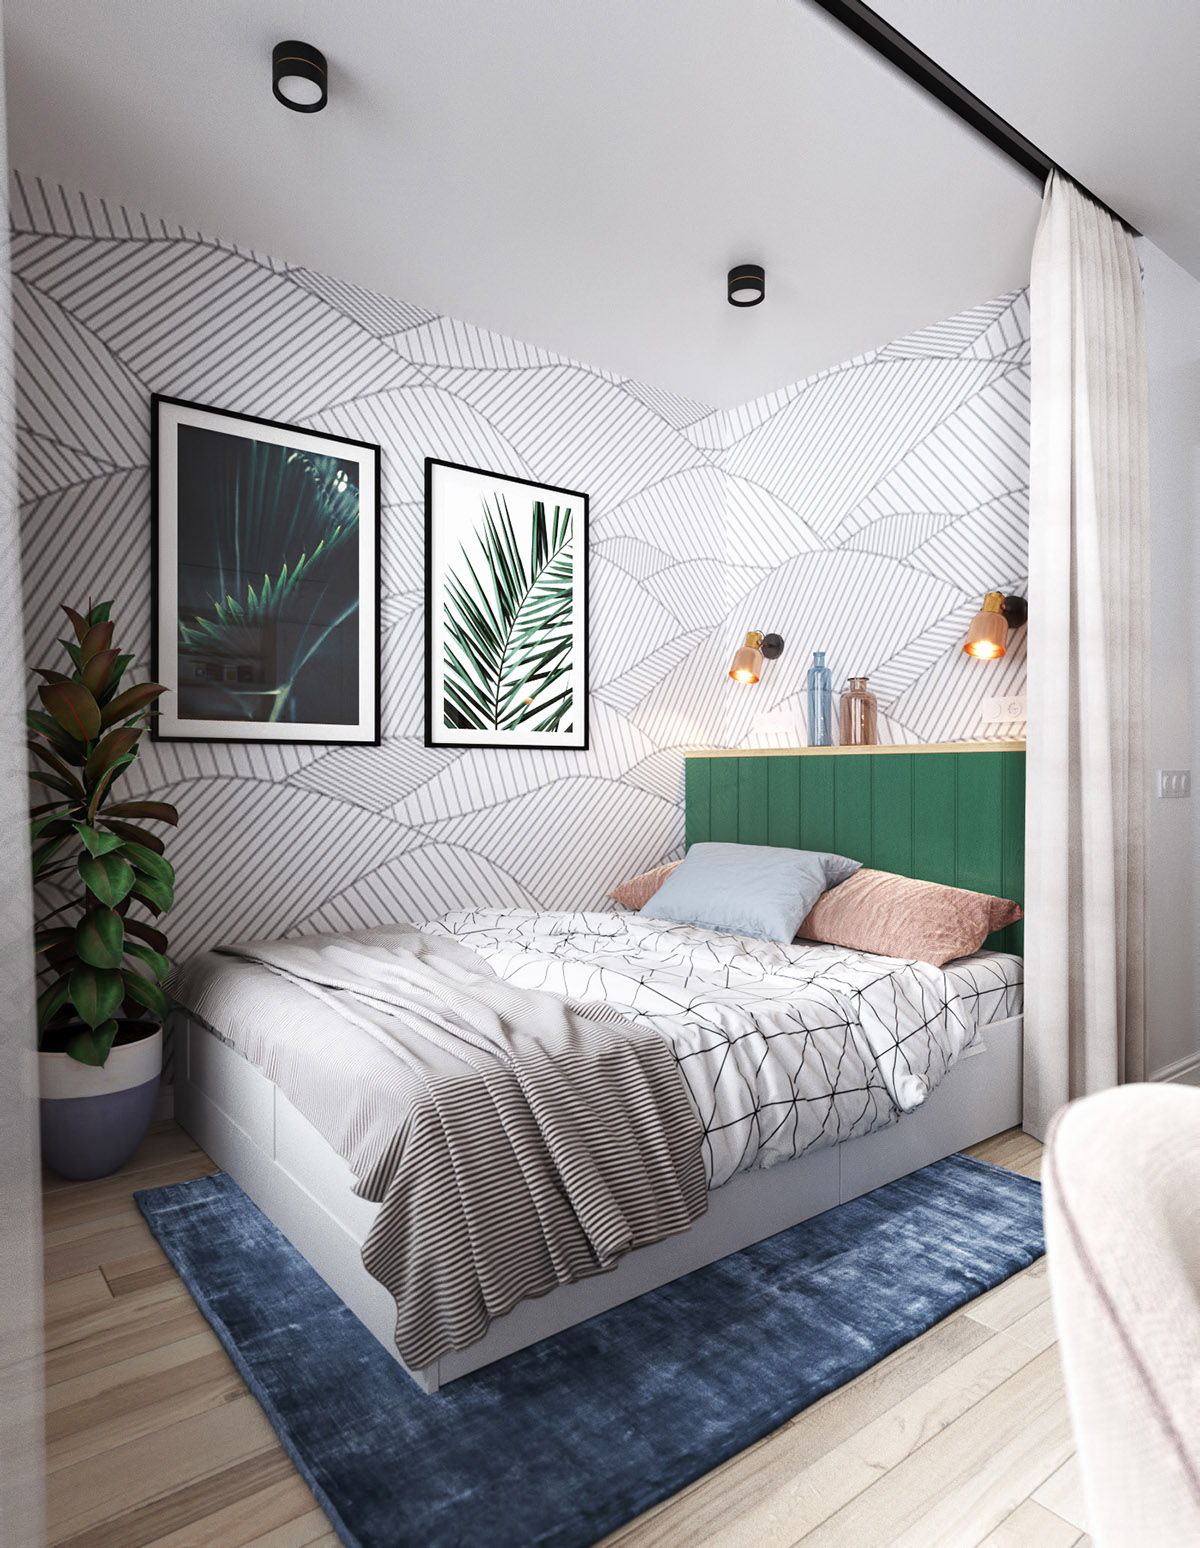 自然,充满活力的绿色卧室设计